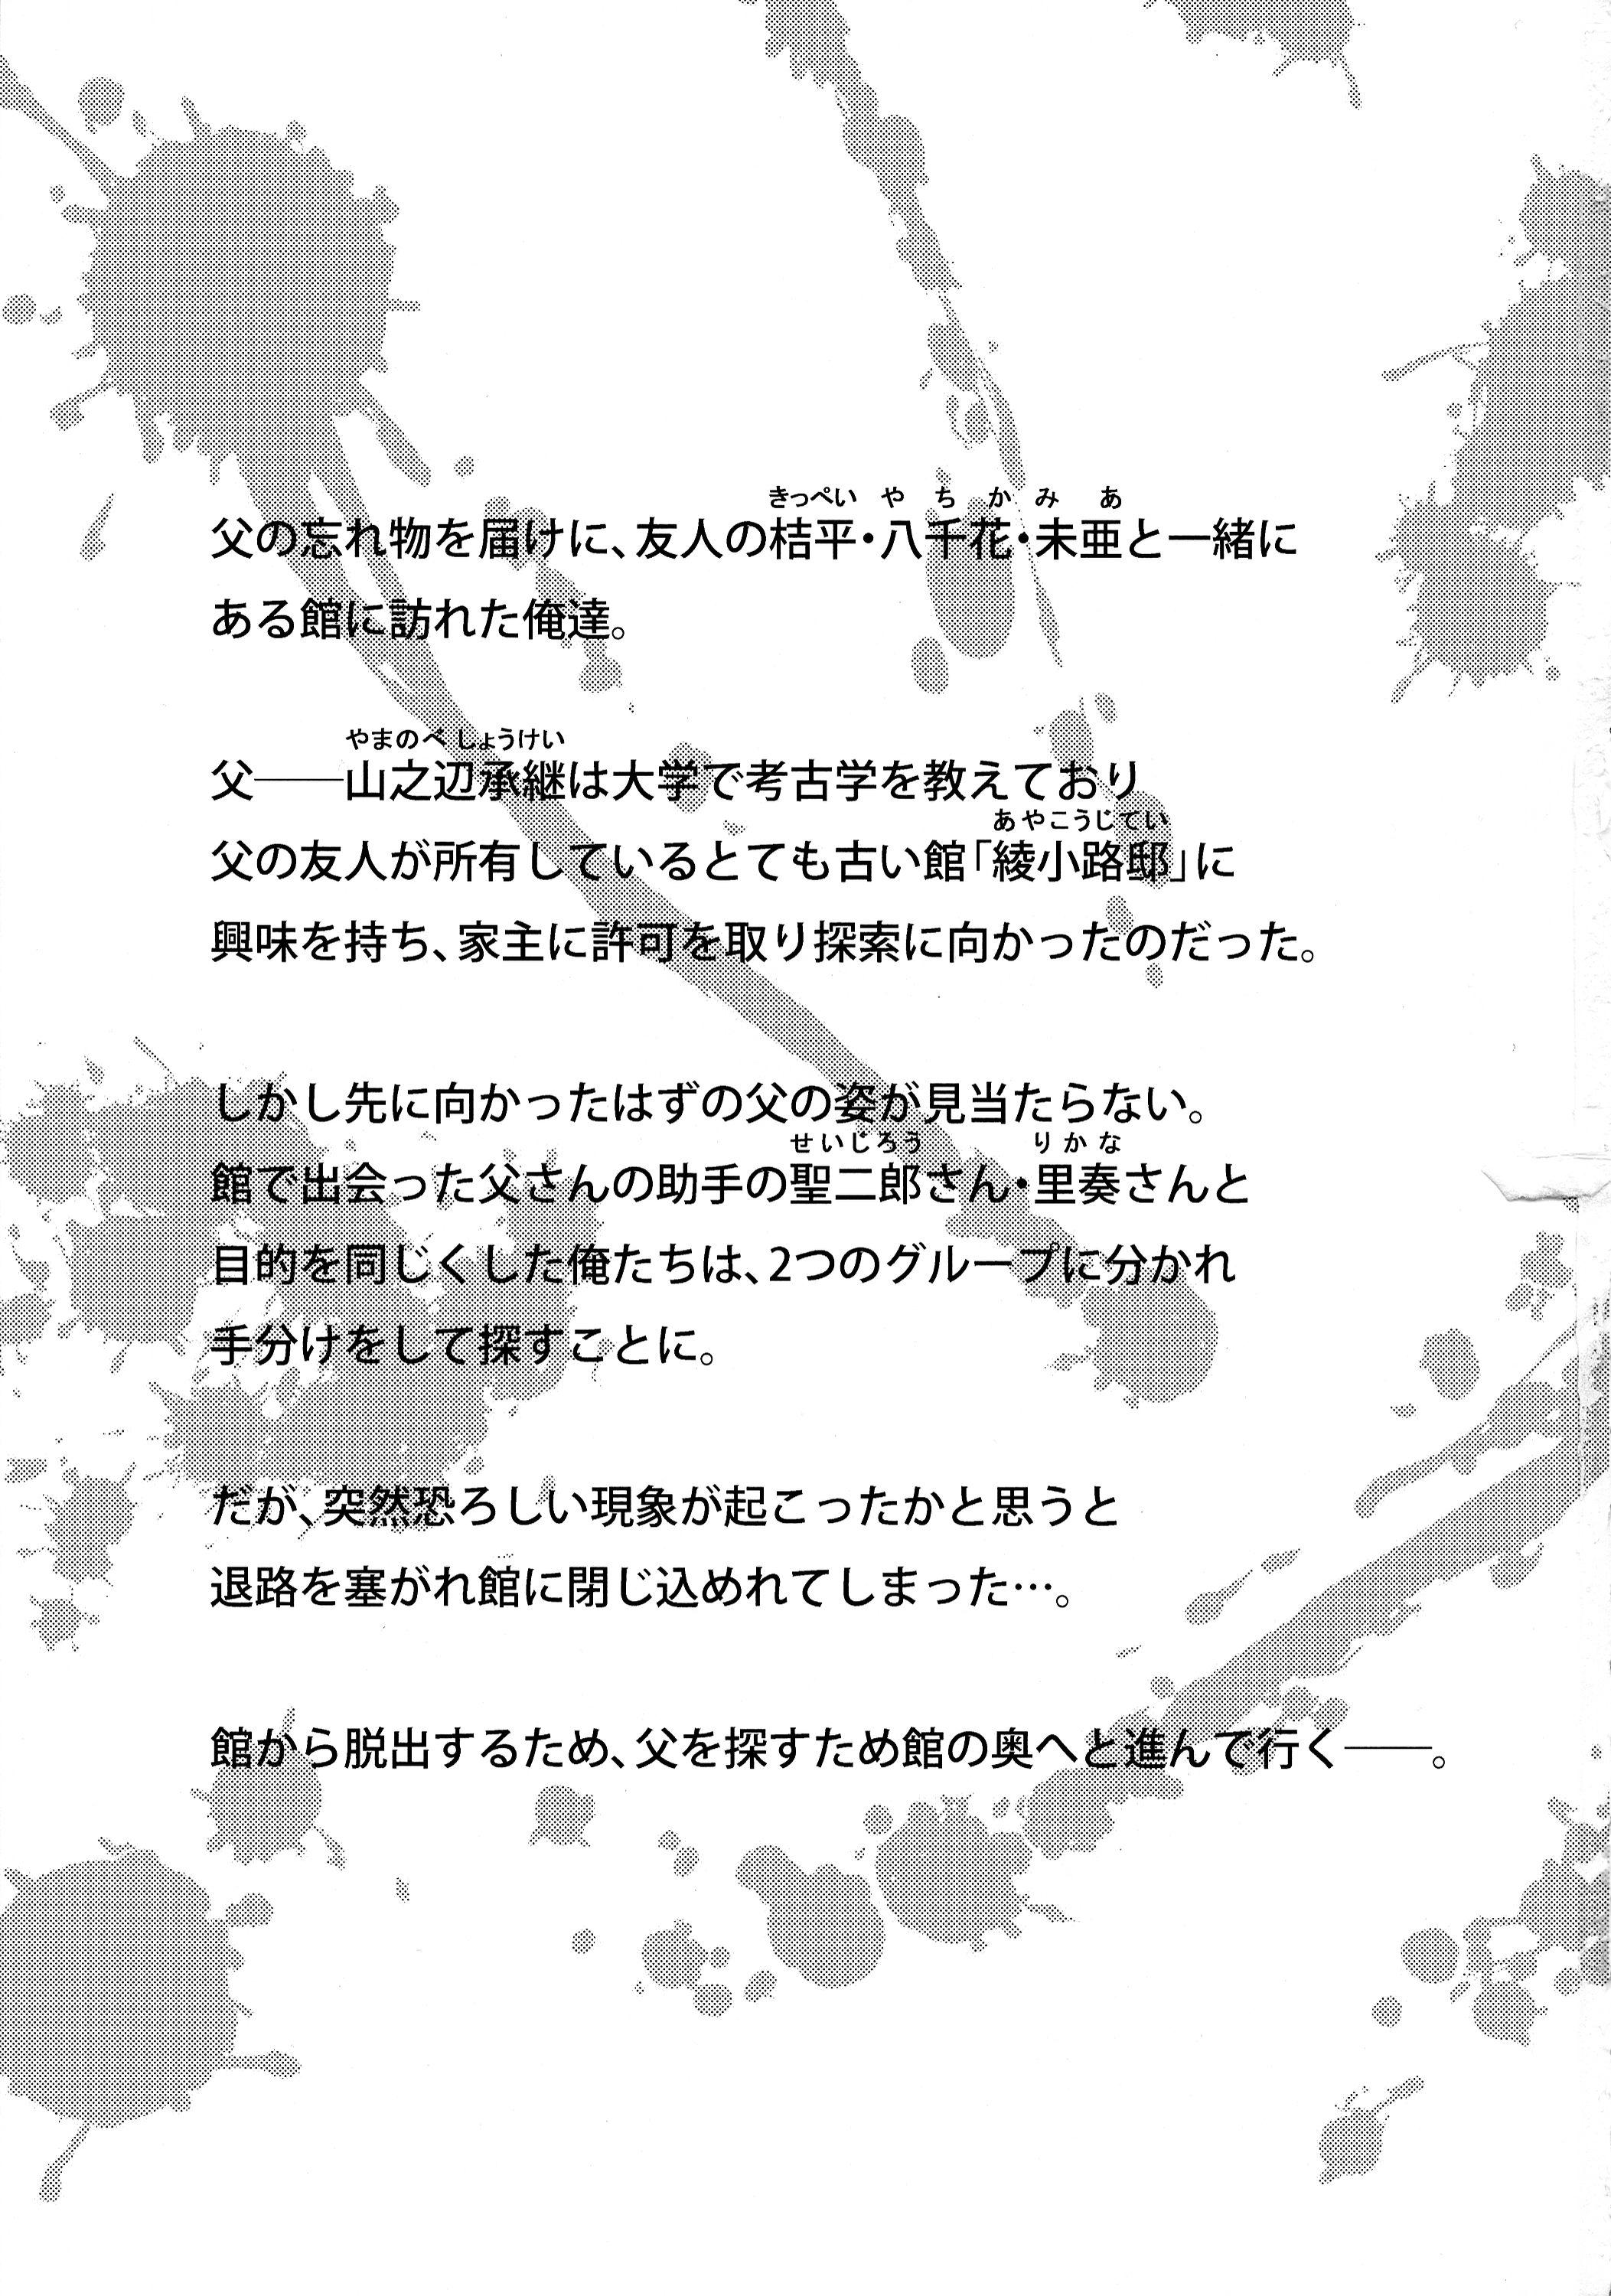 Van Futanari ni Naru Kanojo no Aventure - Fukai ni nemuru oujo no abaddon Pantyhose - Page 3